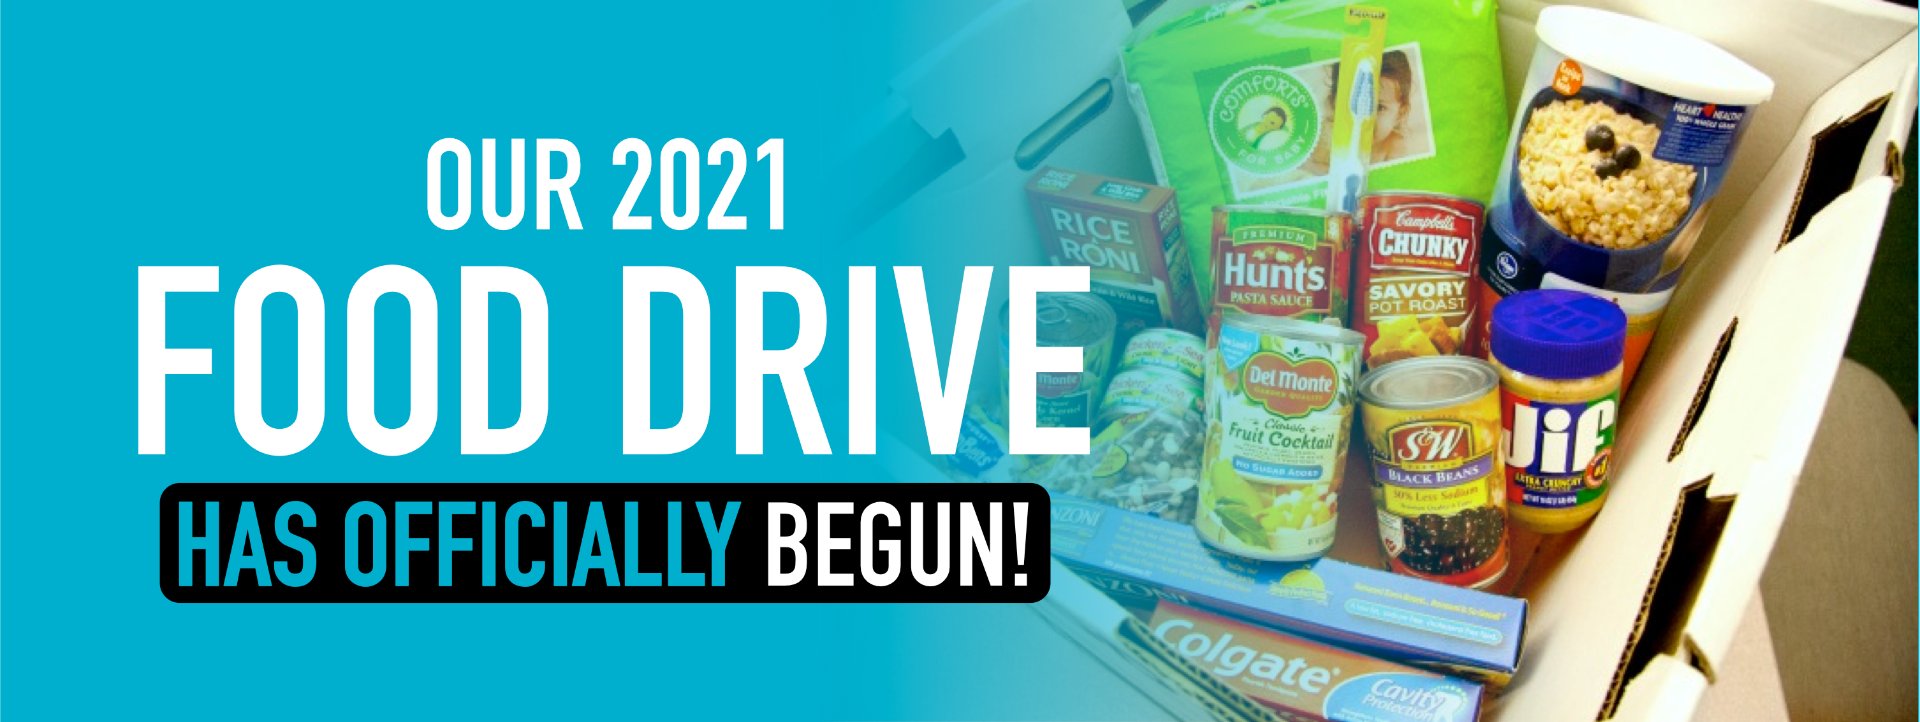 2021 Food Drive - Car Tender